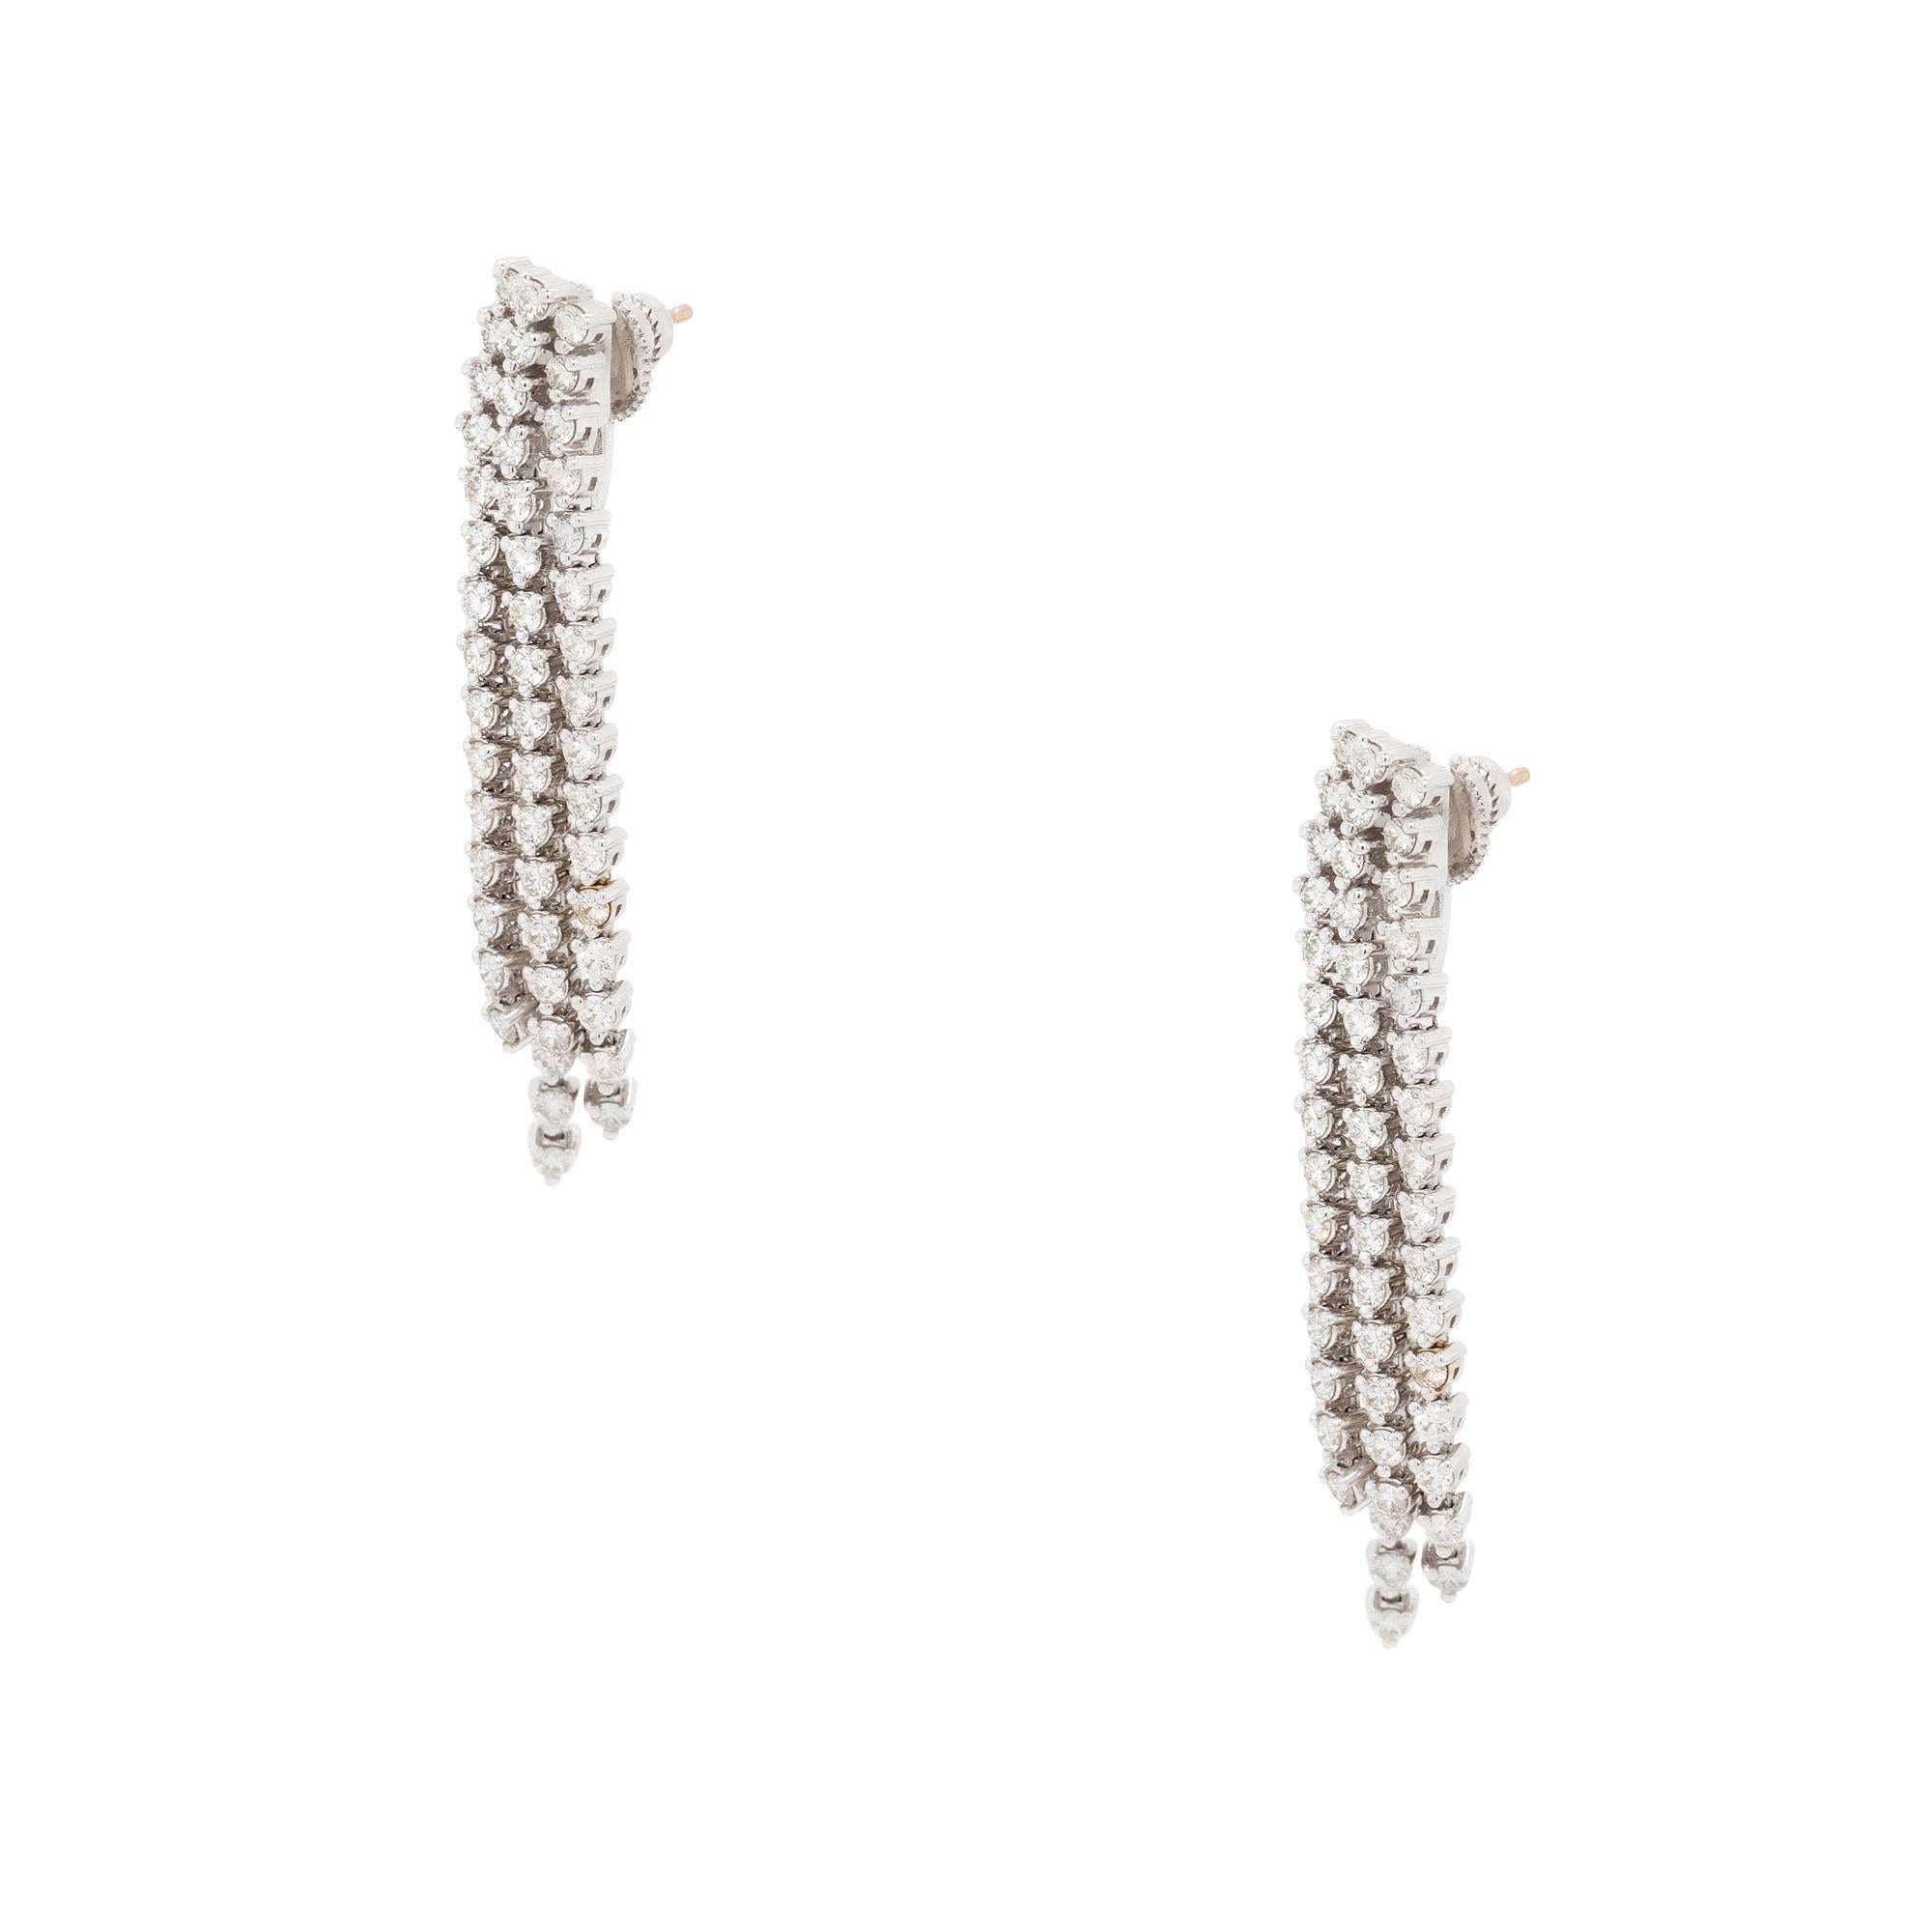 earrings with strings